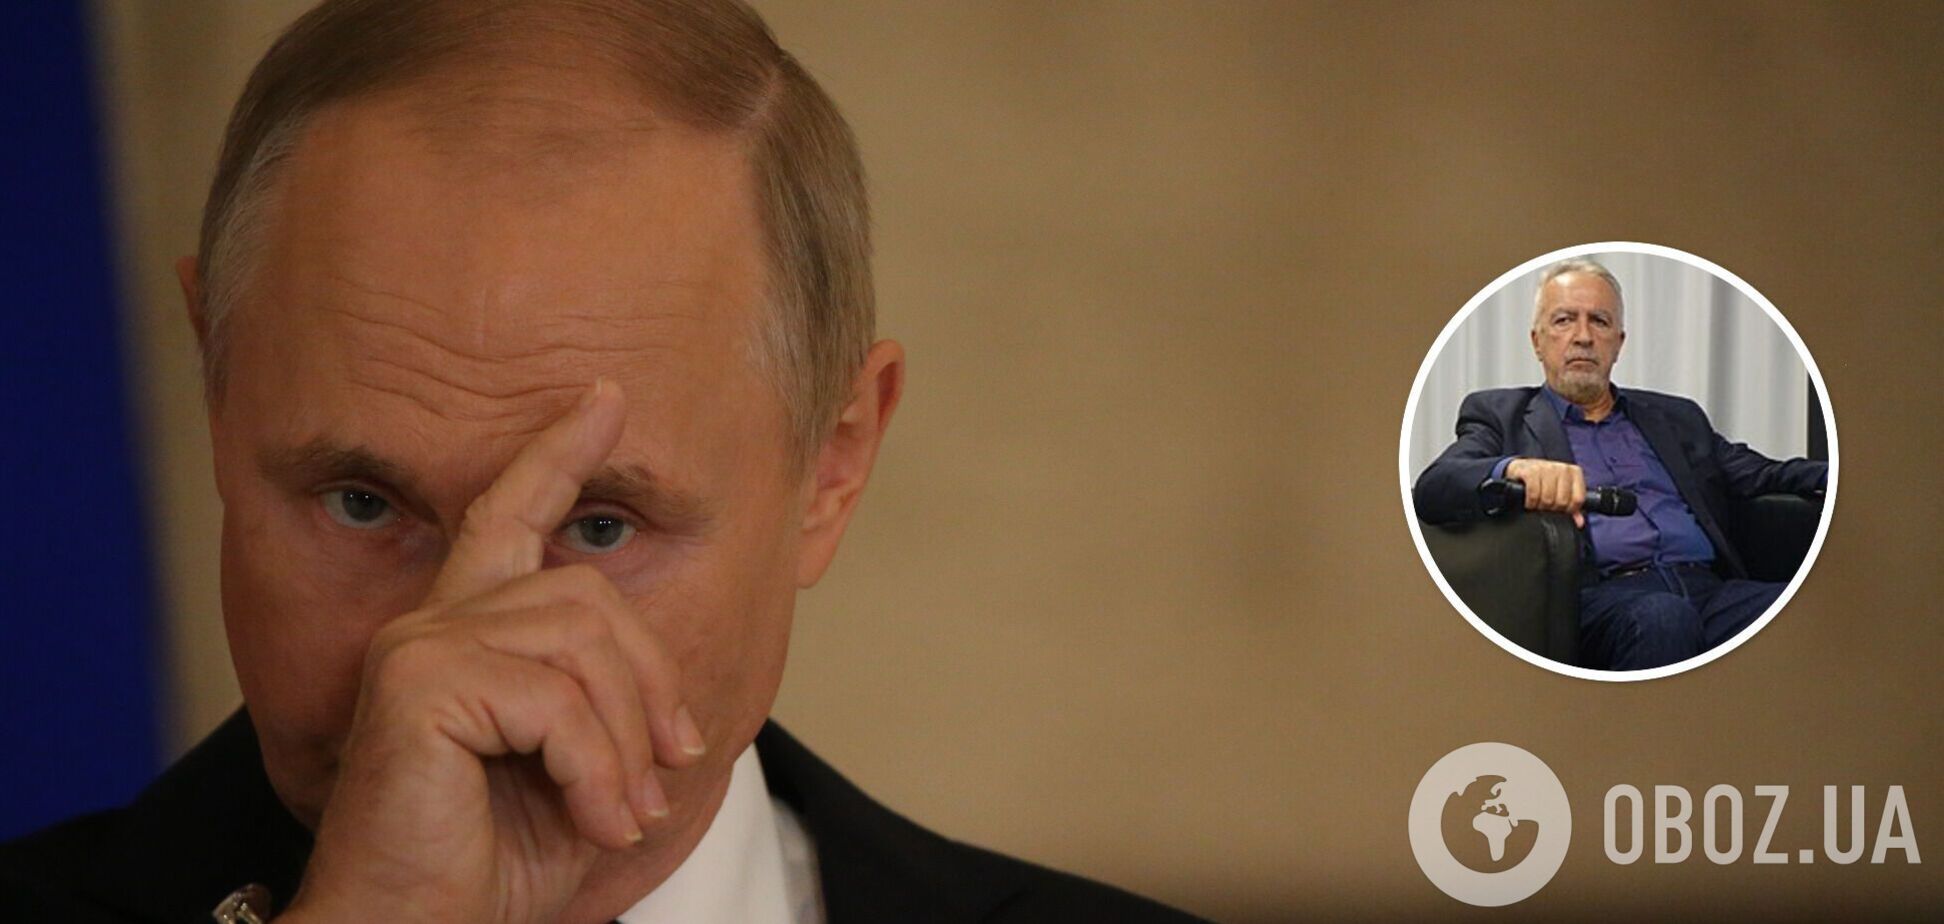 Путін чіпляється за будь-який шанс, бо панічно боїться гніву розчарованих війною росіян, — ексначальник ФСБ Москви